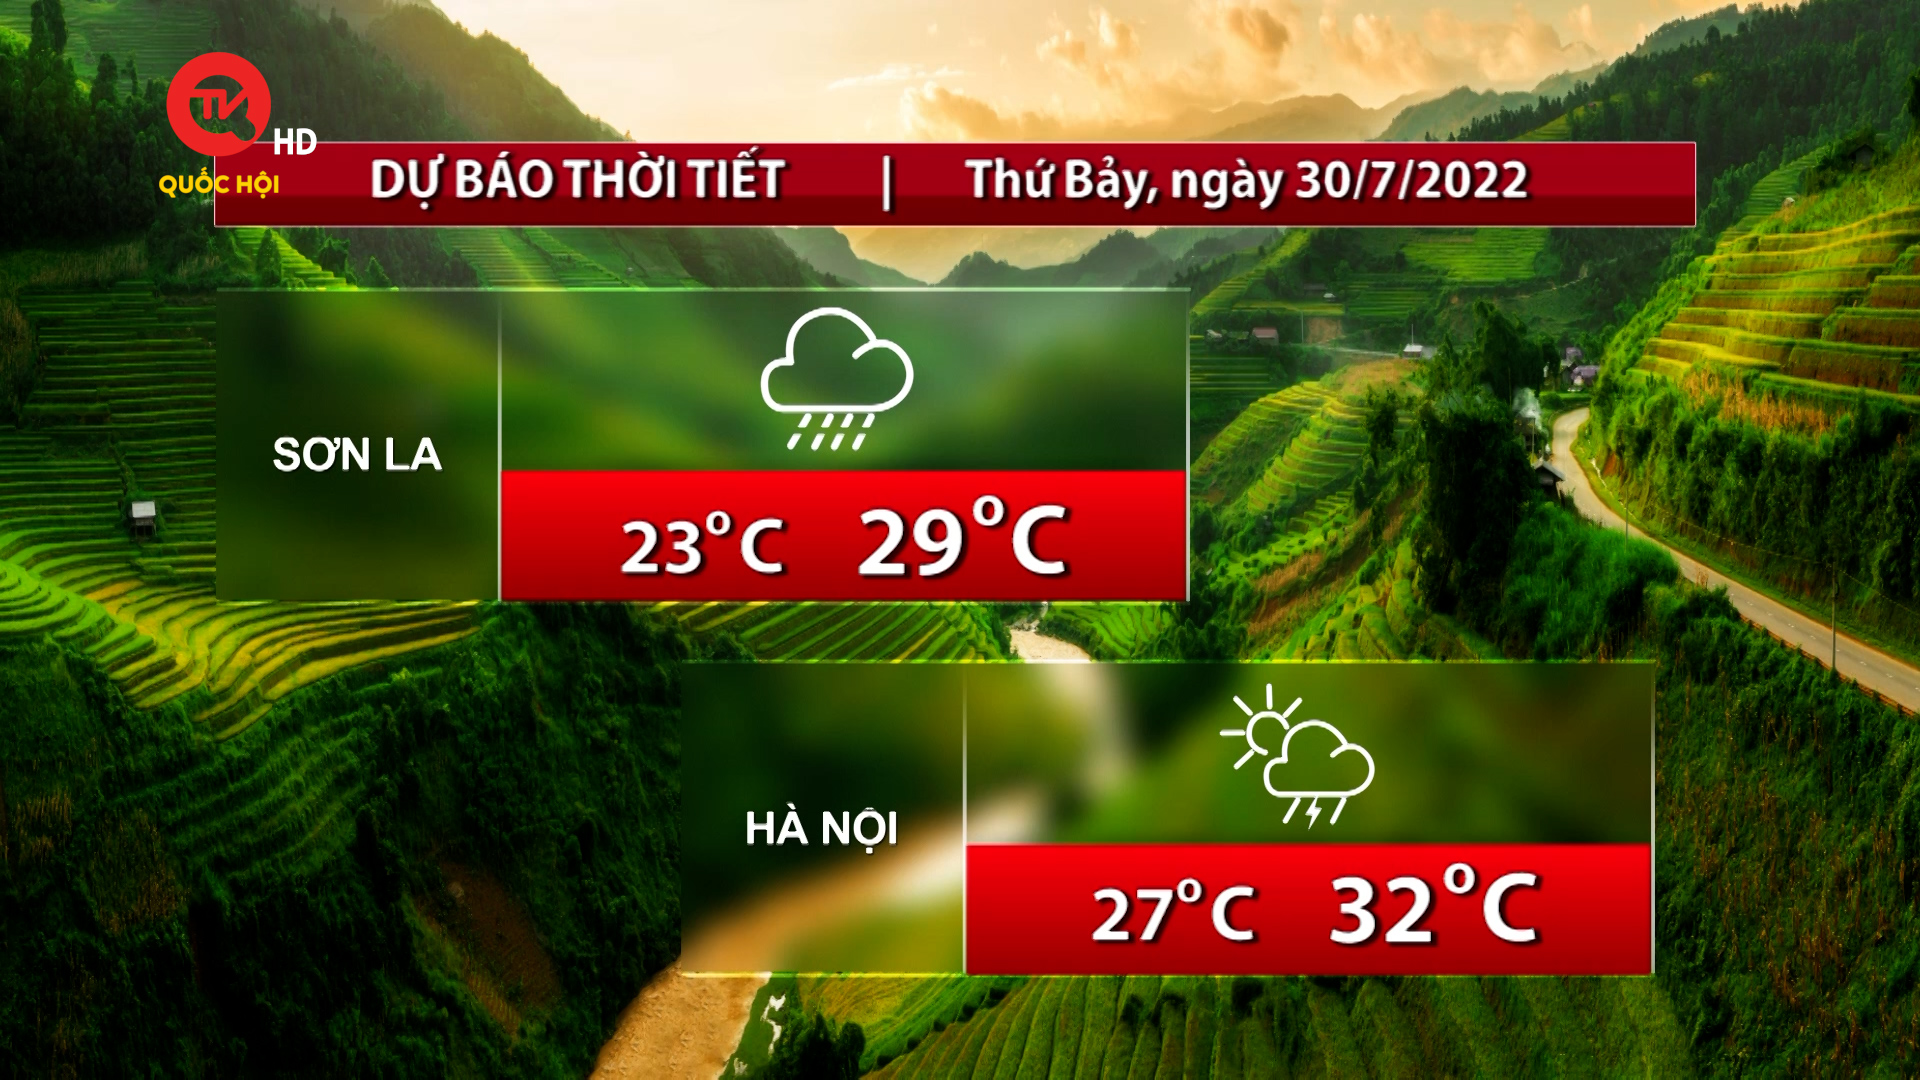 Dự báo thời tiết: Ngày 30/7 Bắc Bộ dịu nóng, Tây Nguyên và Nam Bộ nắng nóng, chiều mưa giông